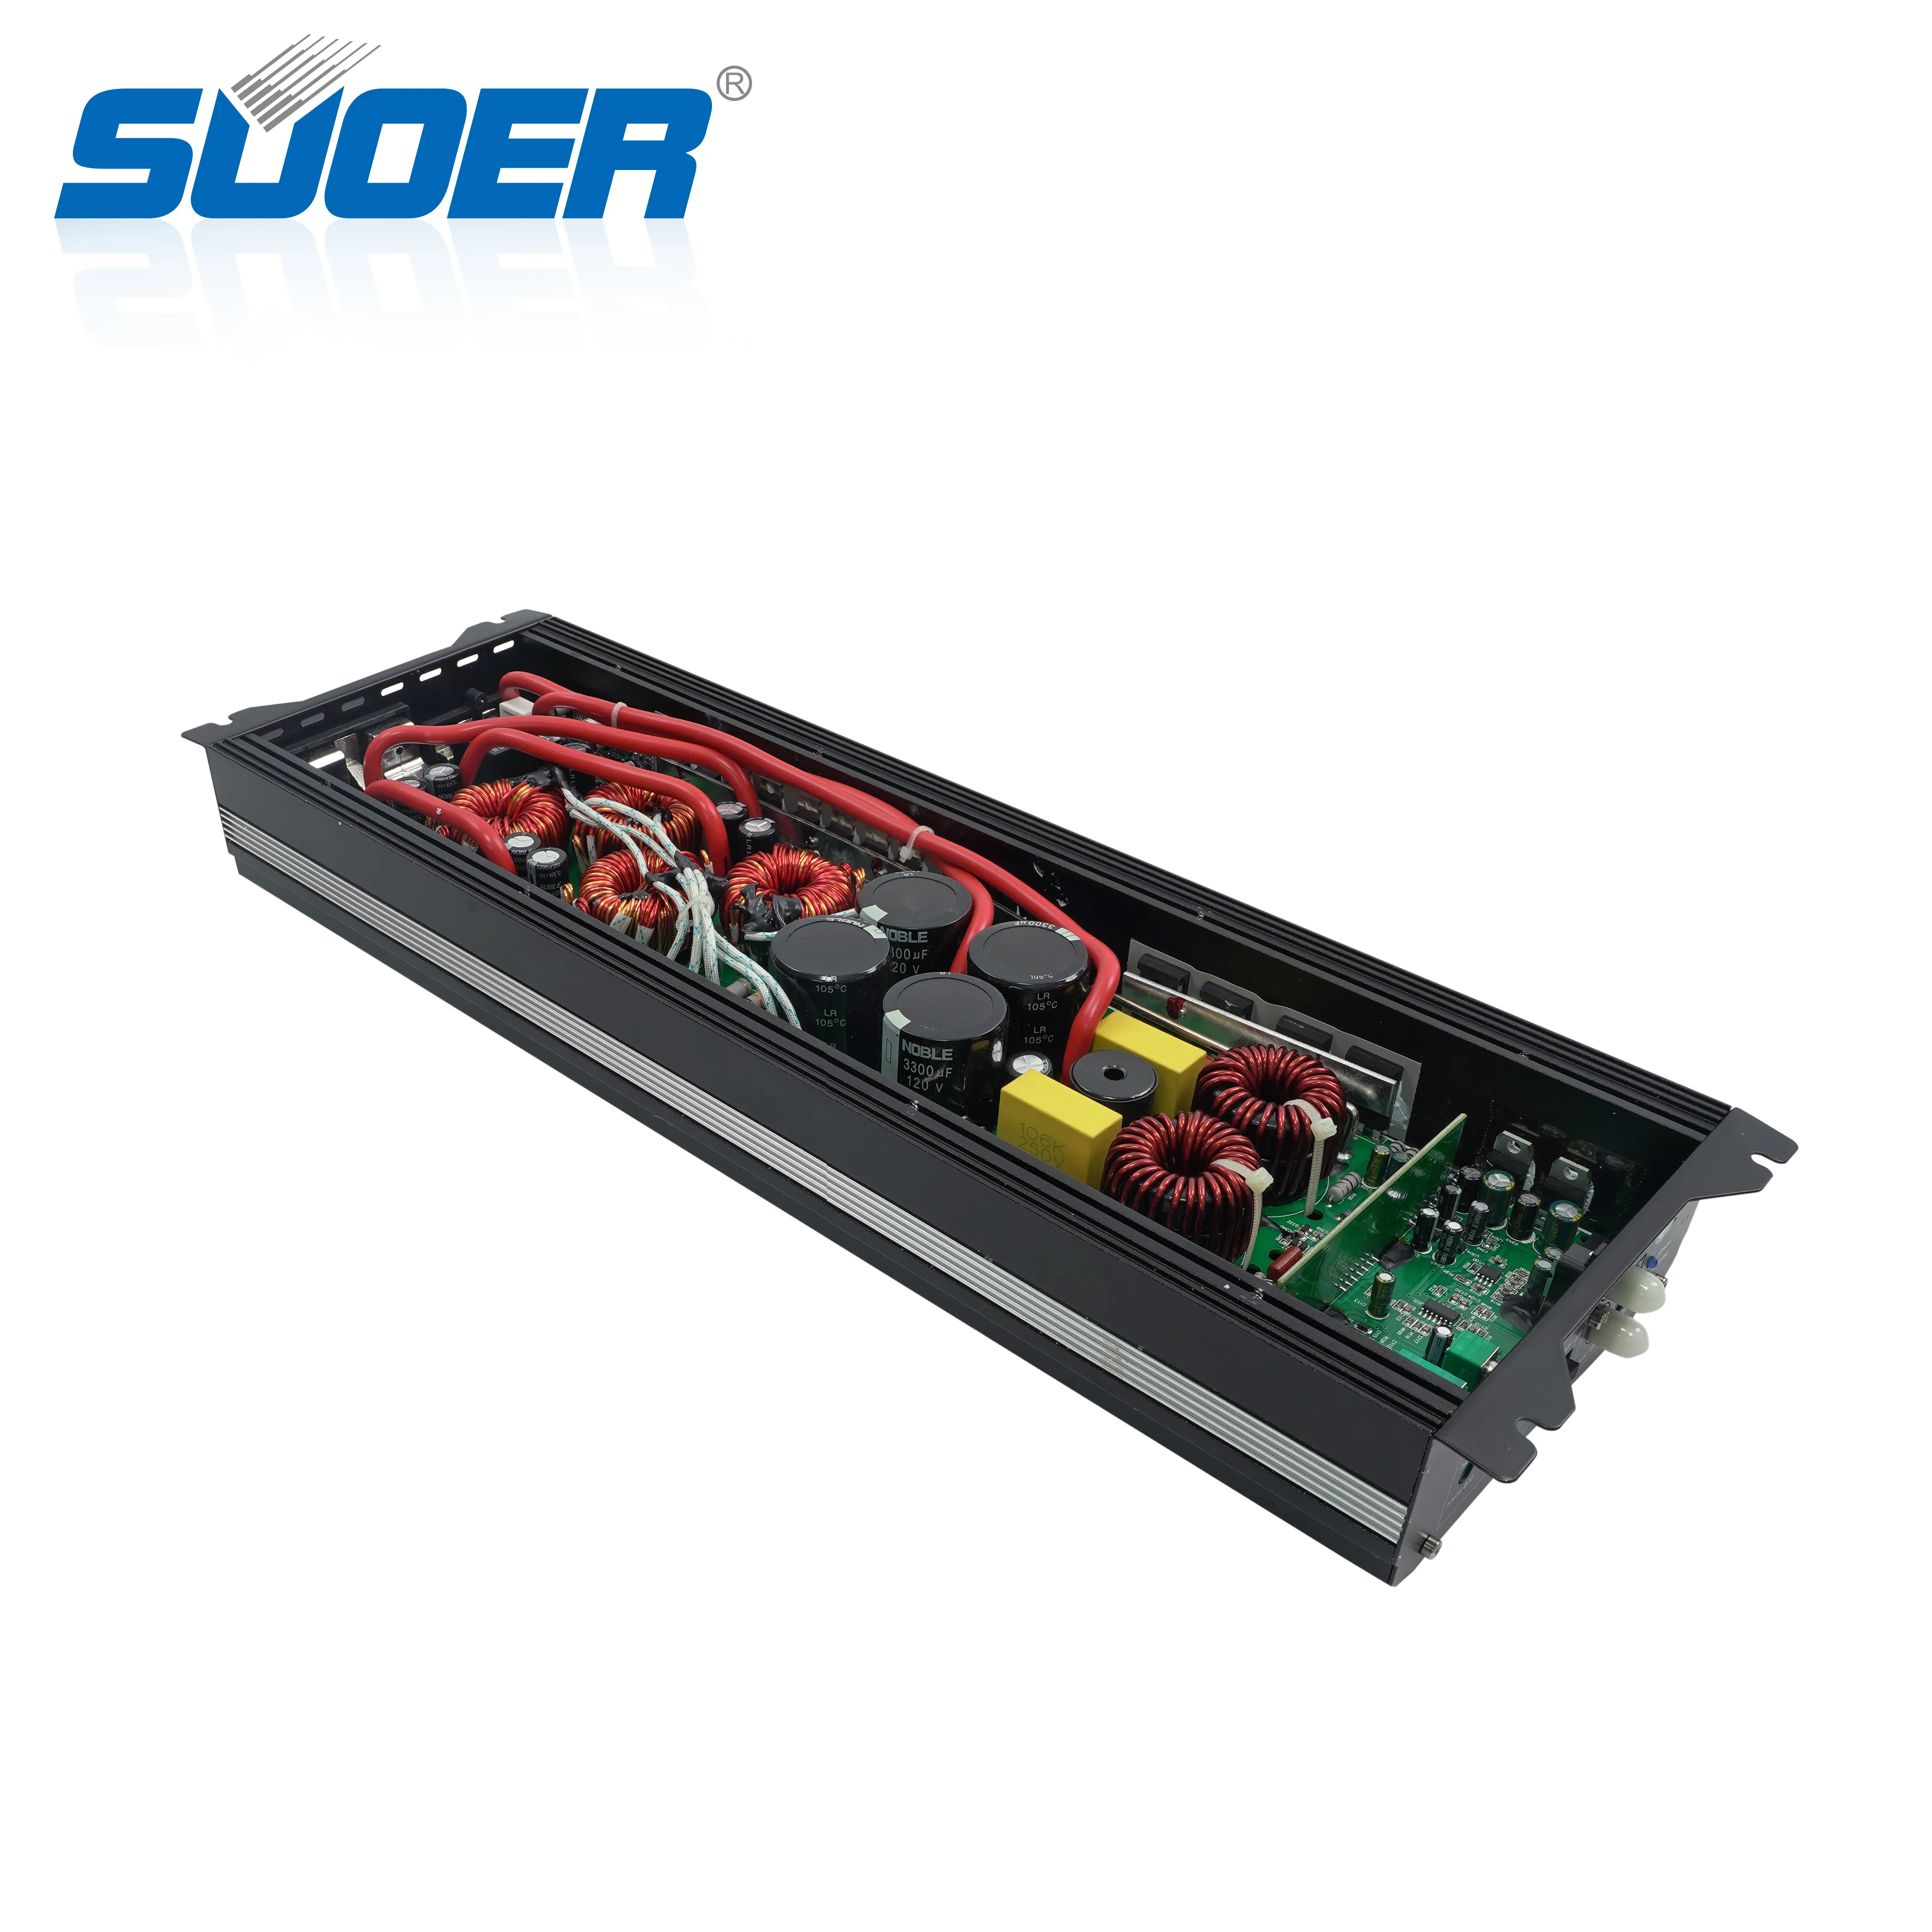 Suoer CL-5K haute puissance gamme complète 1*5000 watts amplificateur de puissance rms mono canal classe d amplificateur de voiture